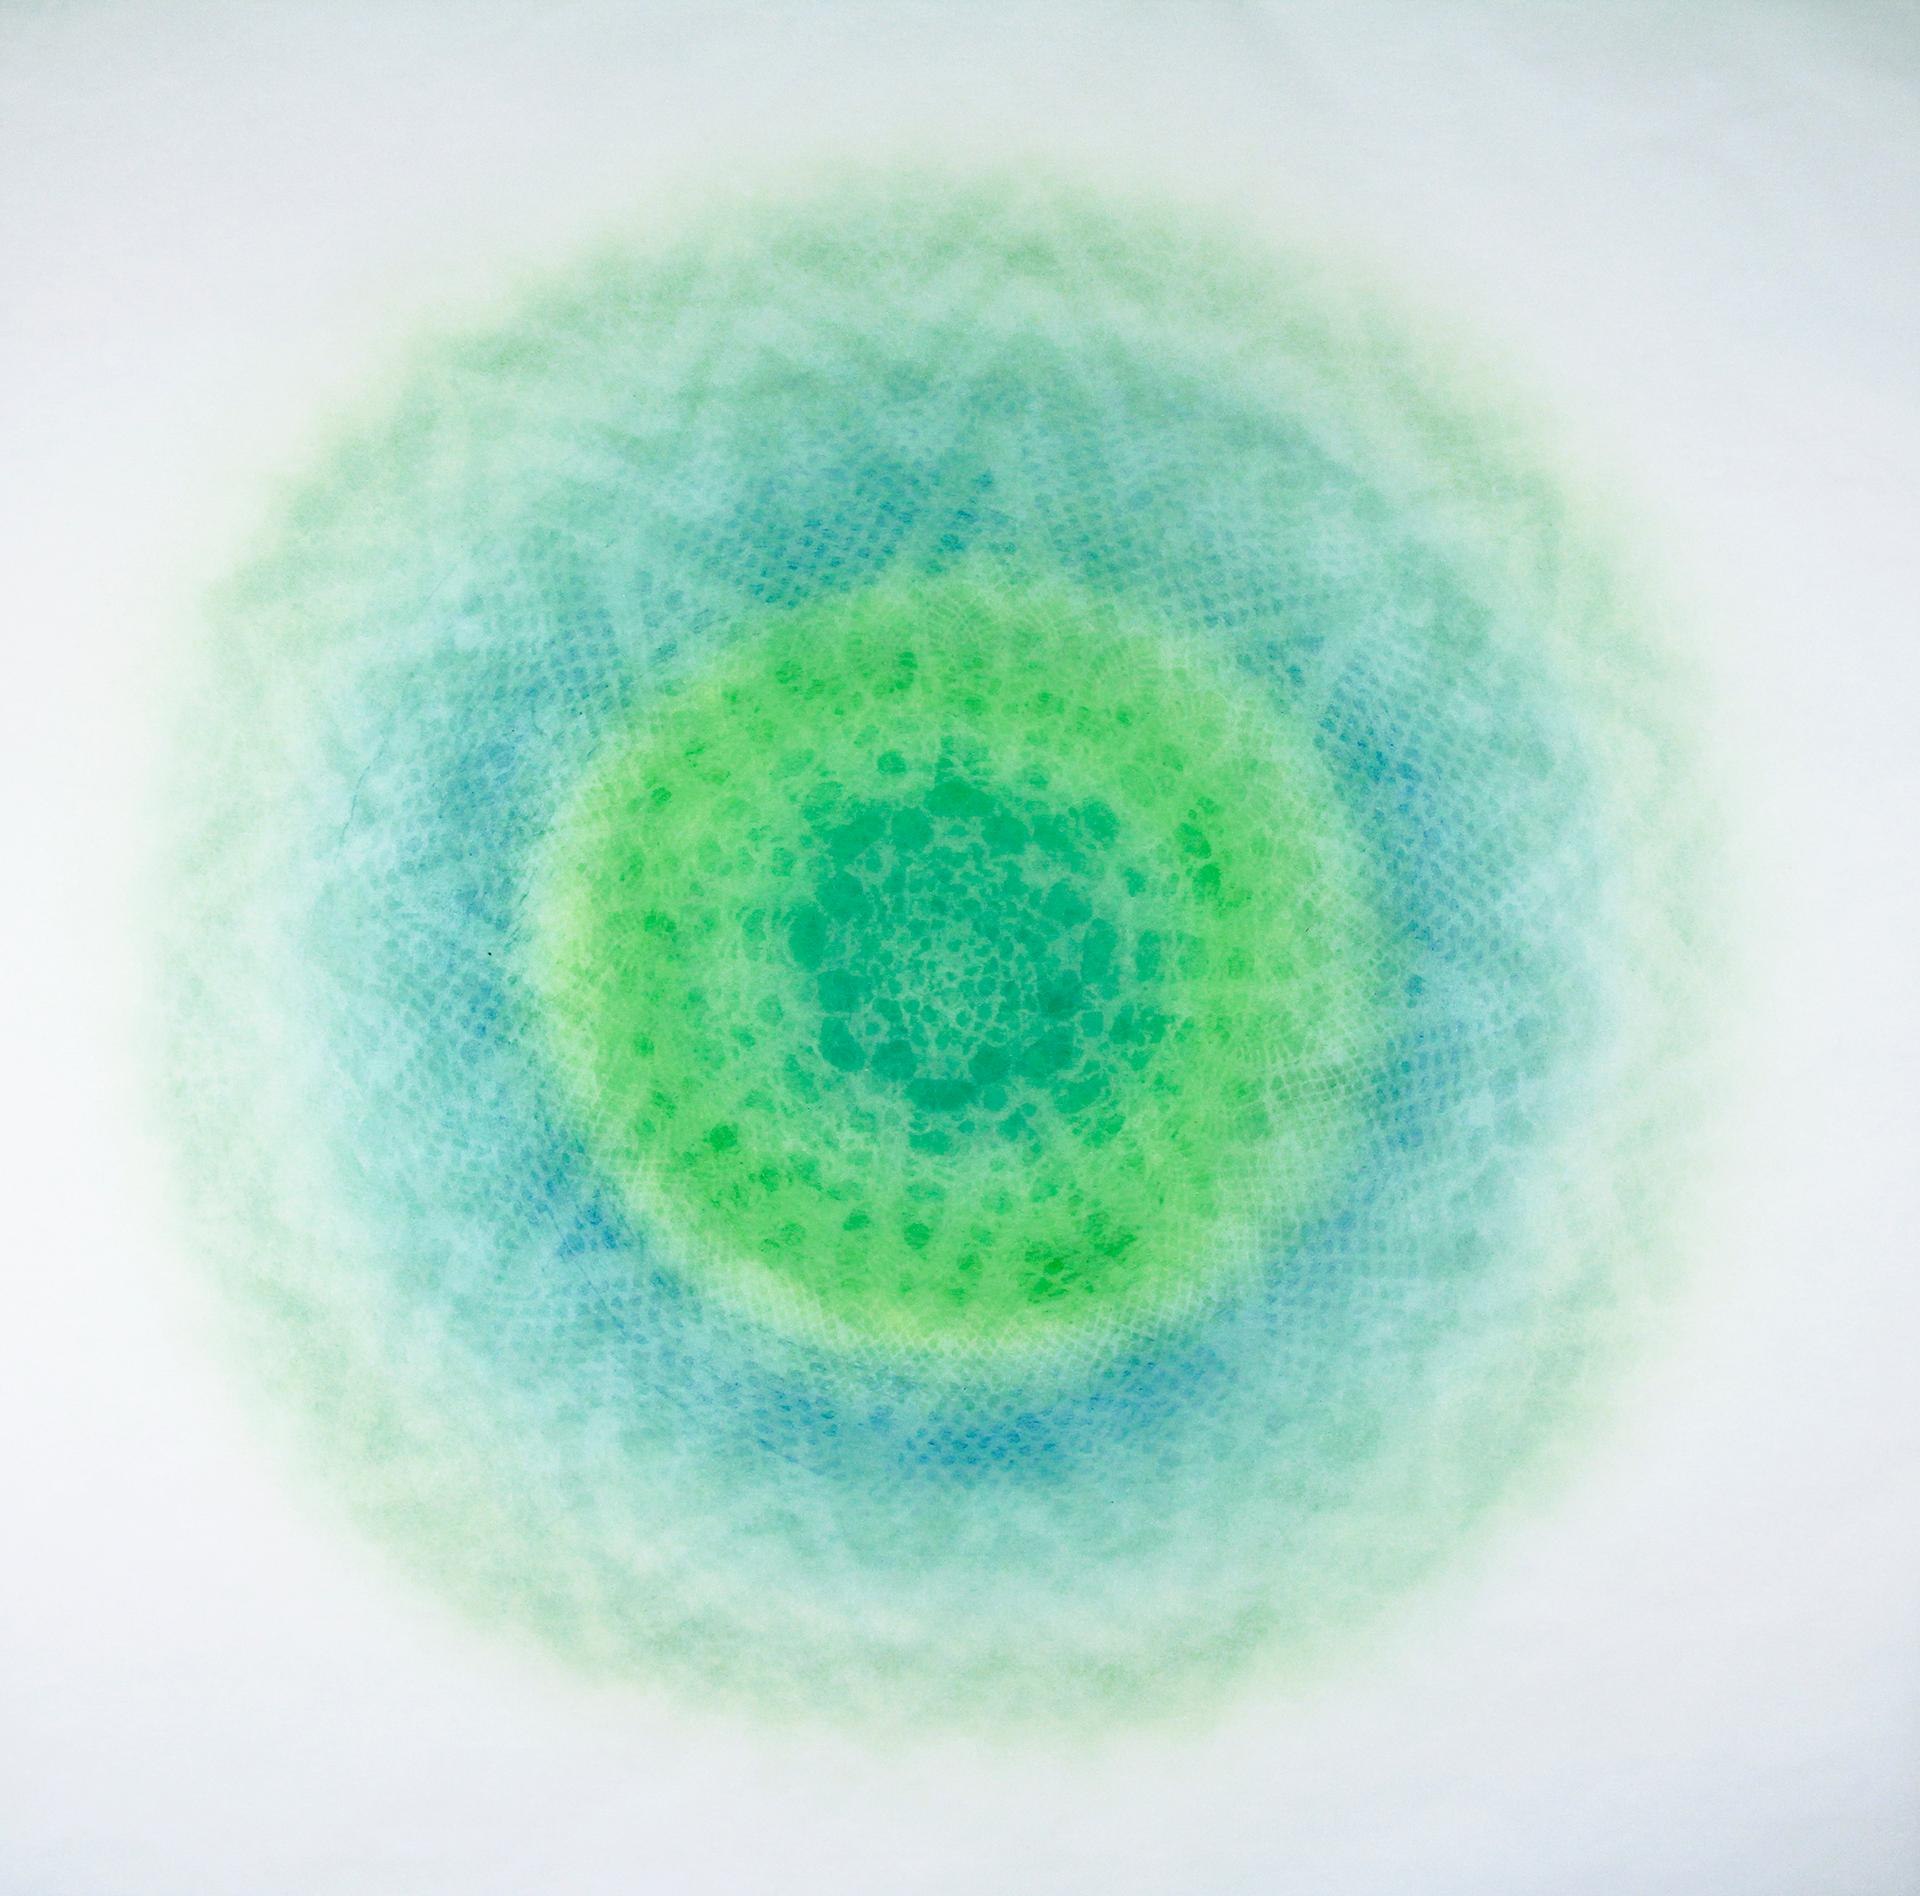 Revolution LIII - cercle géométrique abstrait en dentelle complexe bleue et verte découpée au laser  - Mixed Media Art de Amy Sands